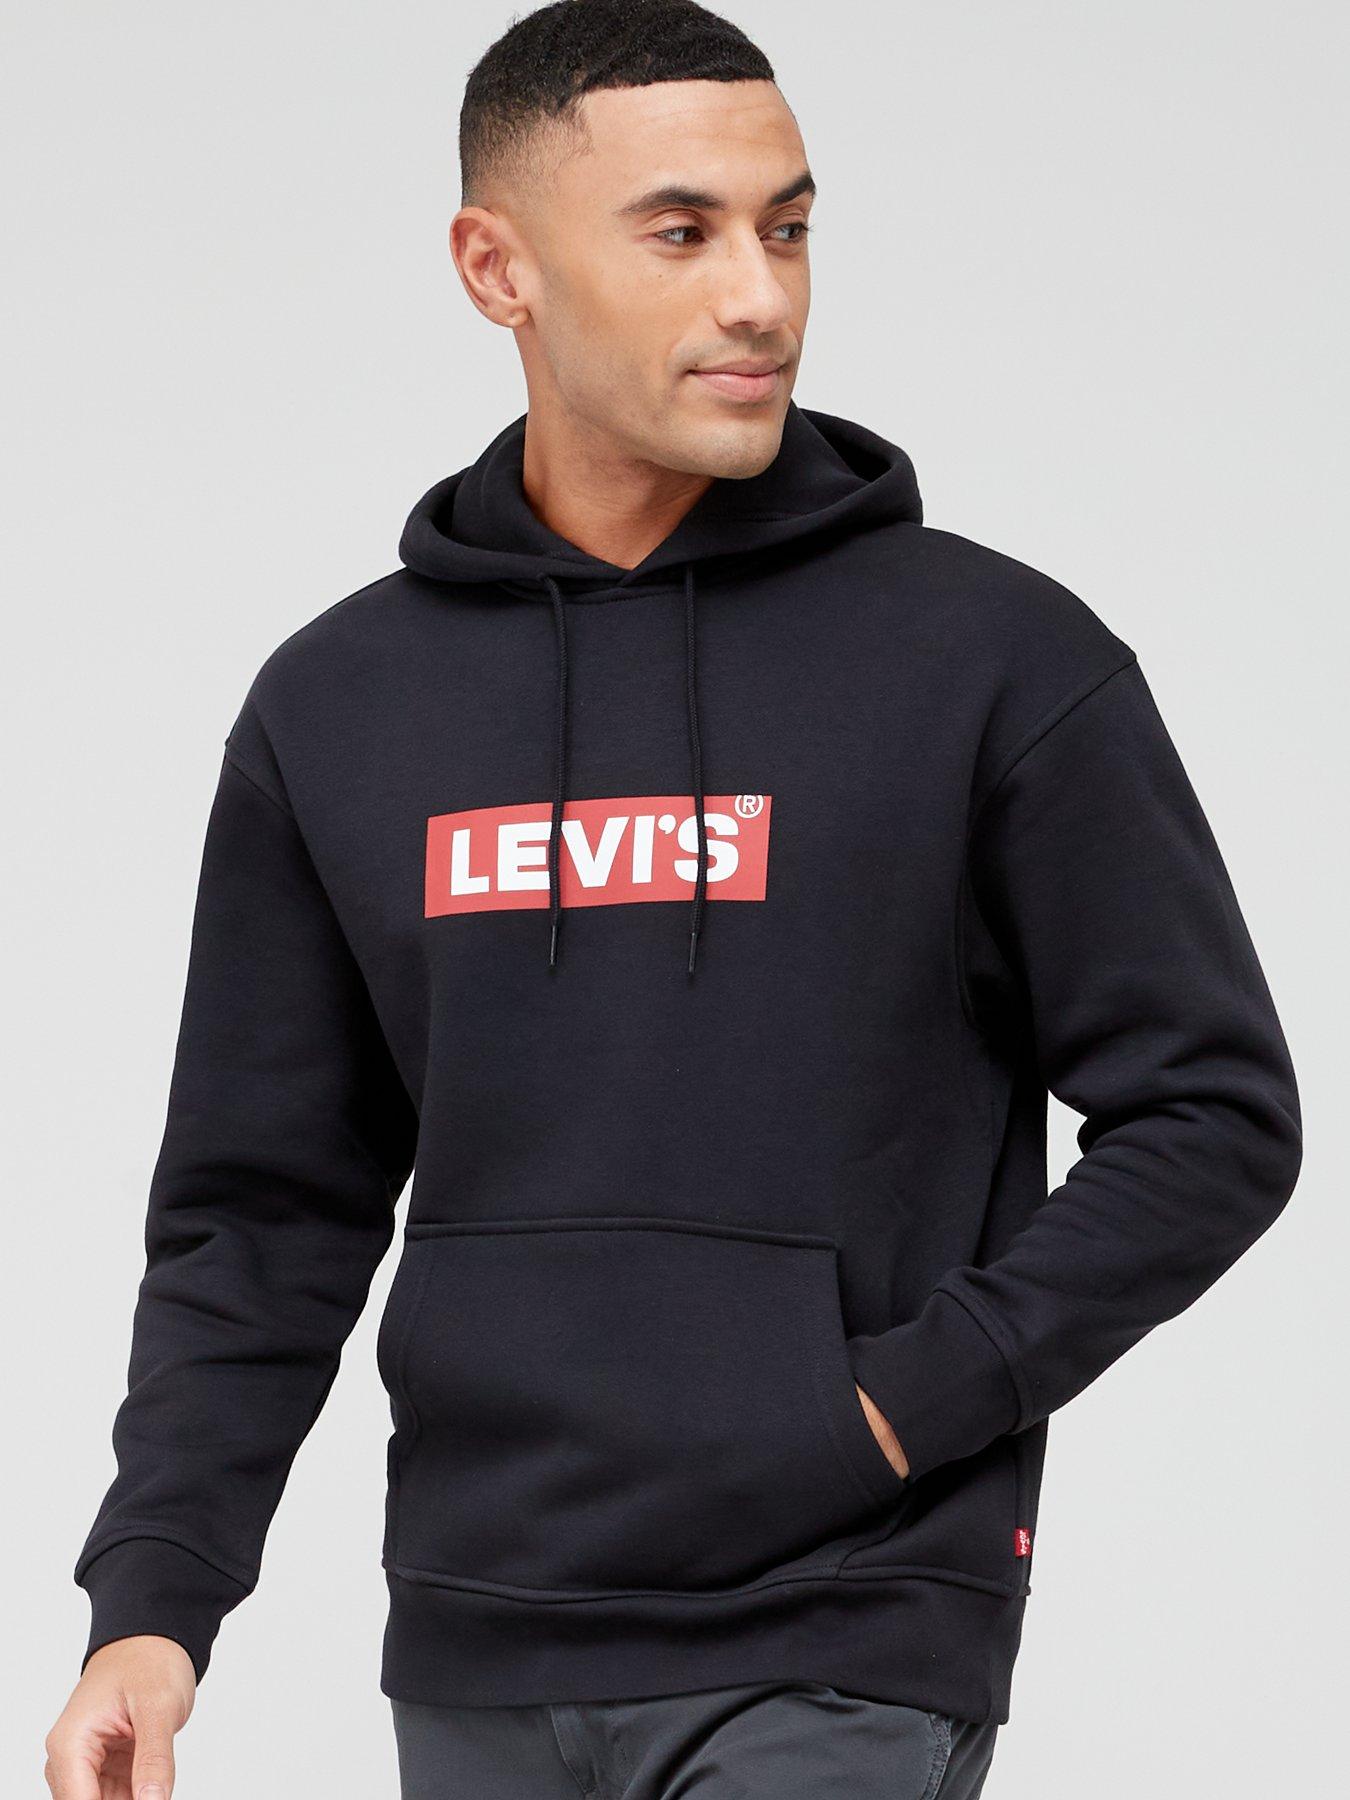 Levi's | Hoodies & sweatshirts | Men 